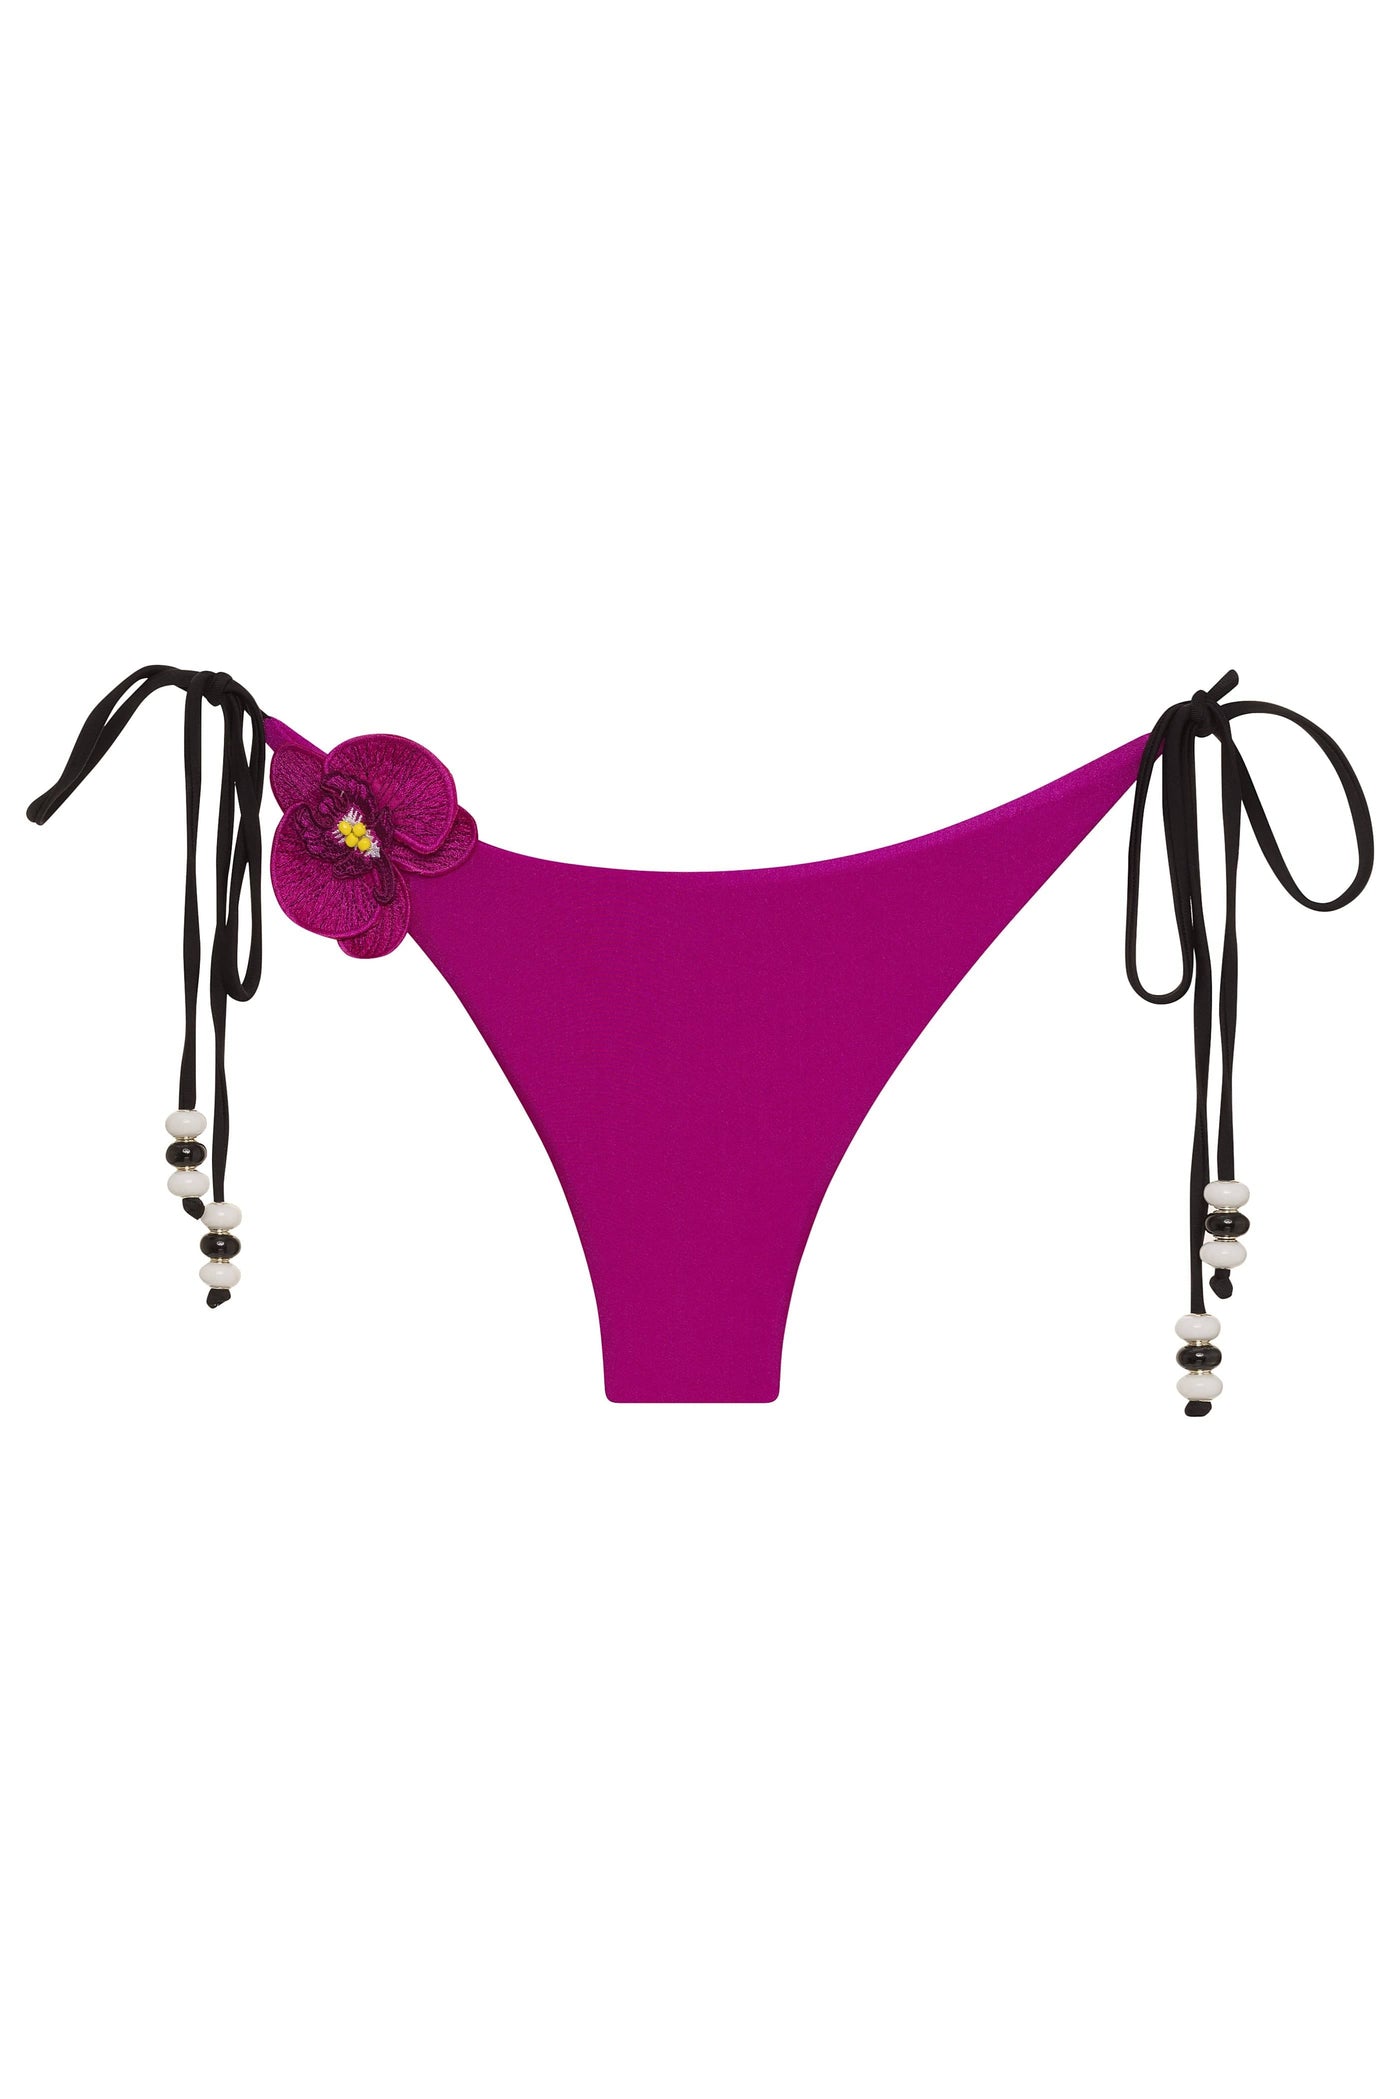 Fuchsia / XS Lycaste Black w/ Embroidered Orchid Tie Side Bikini Bottom 2022 Nikoza Swimwear Lycaste Black Murano Beaded Tie Side Bottom Olga Nikoza Swimwear